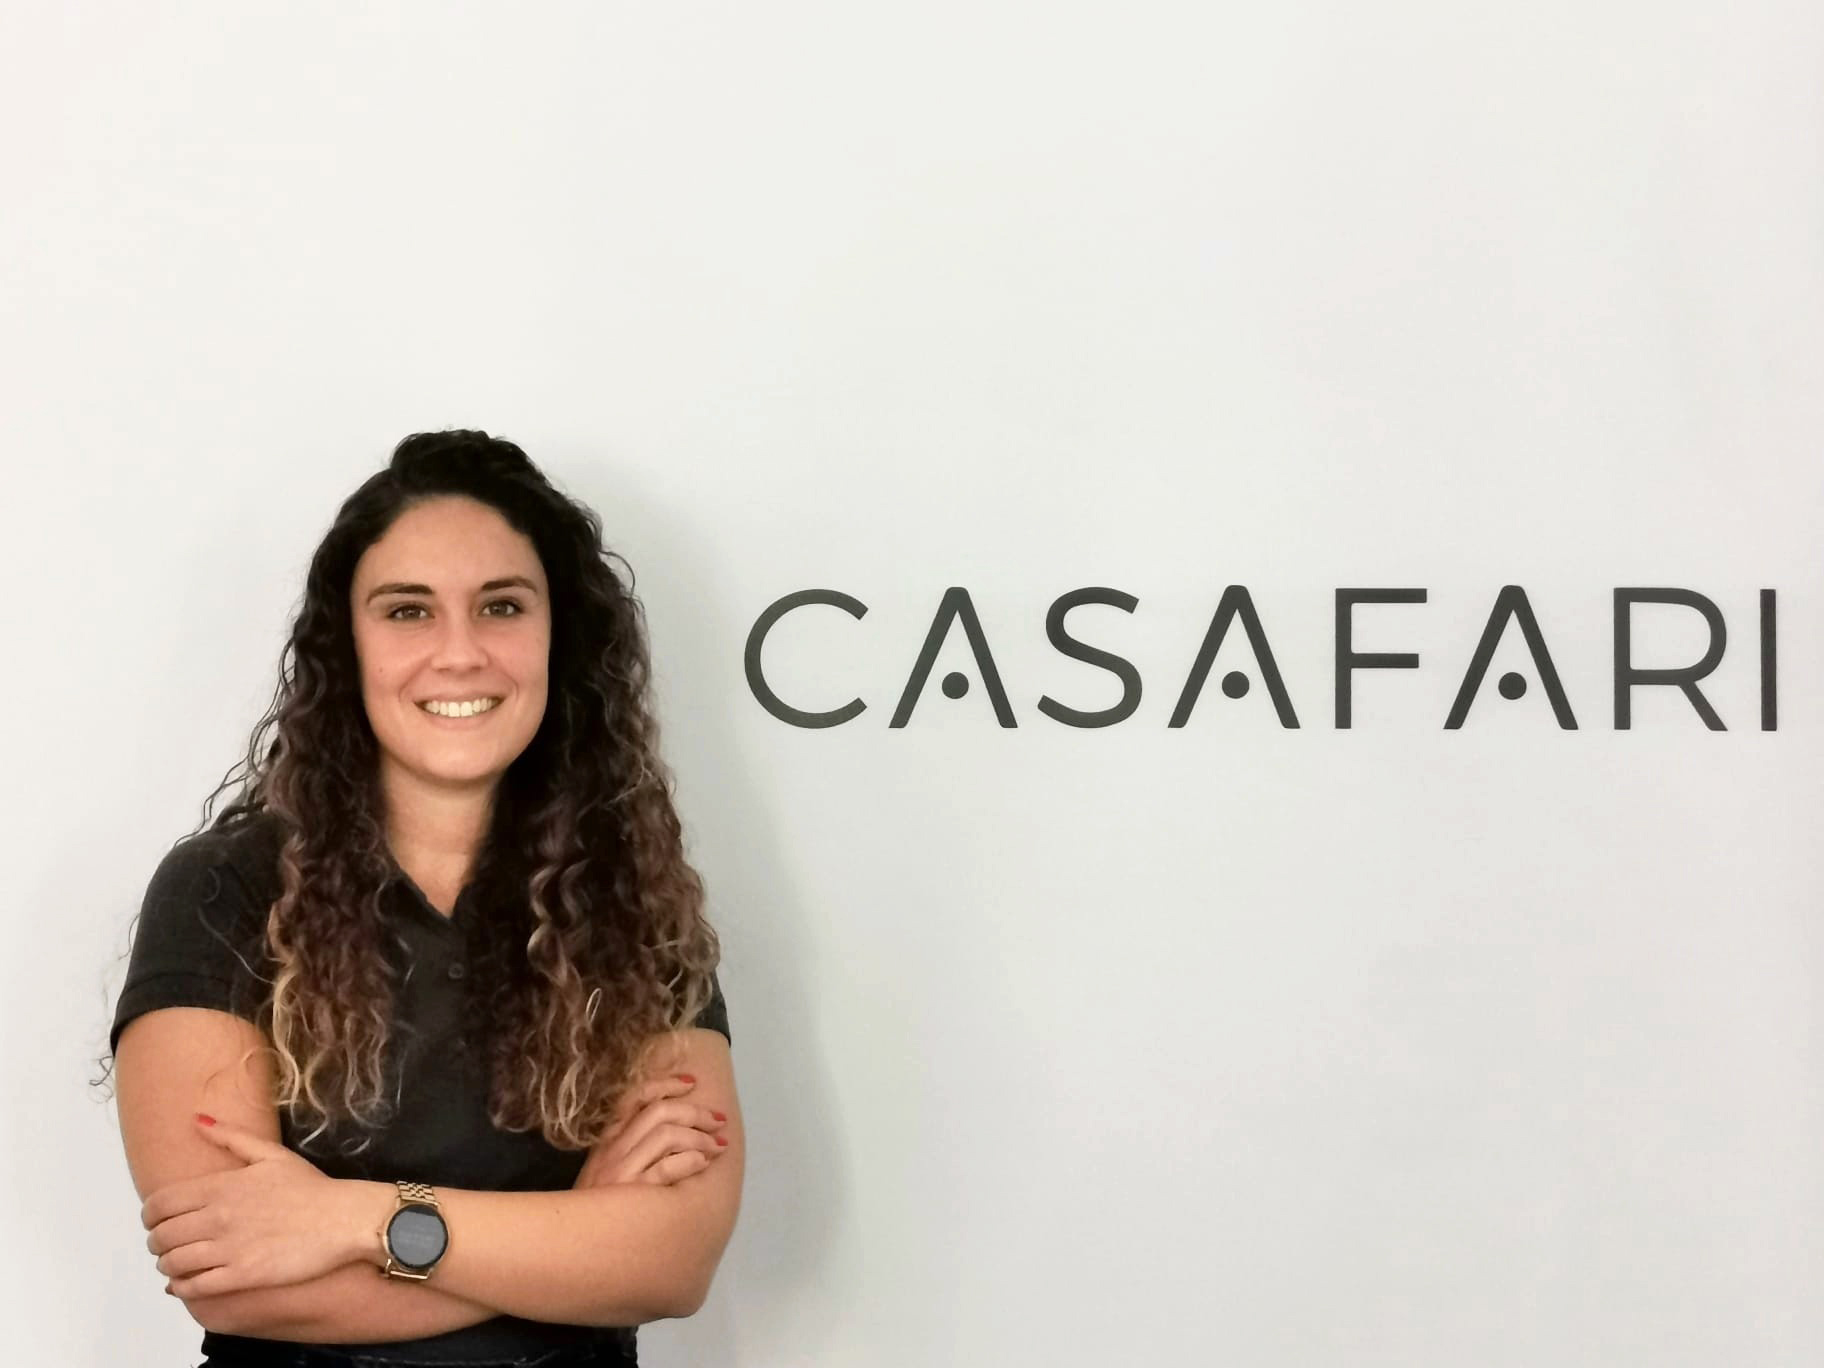 Sara Nunes, Senior Account Manager in CASAFARI